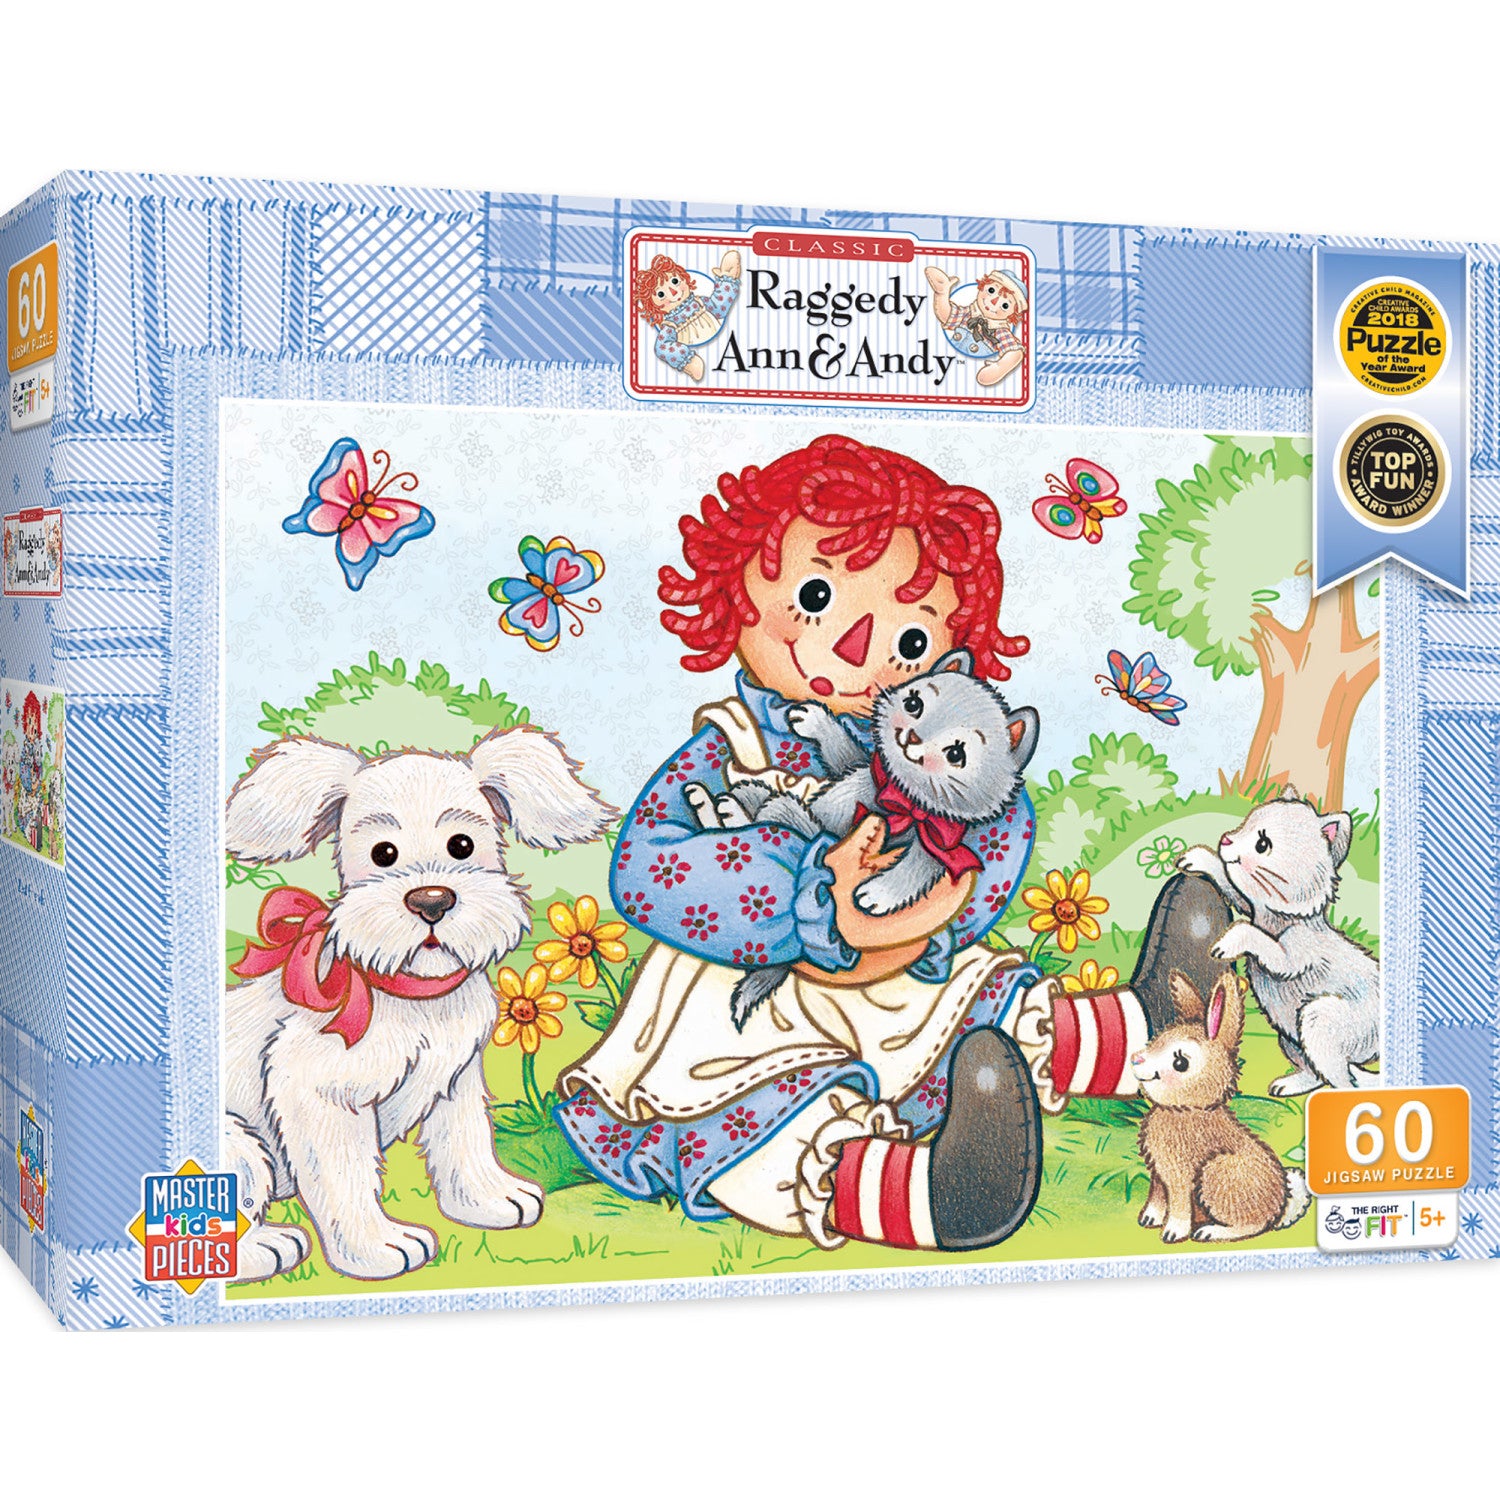 Raggedy Ann - Best Friends 60 Piece Kids Puzzle